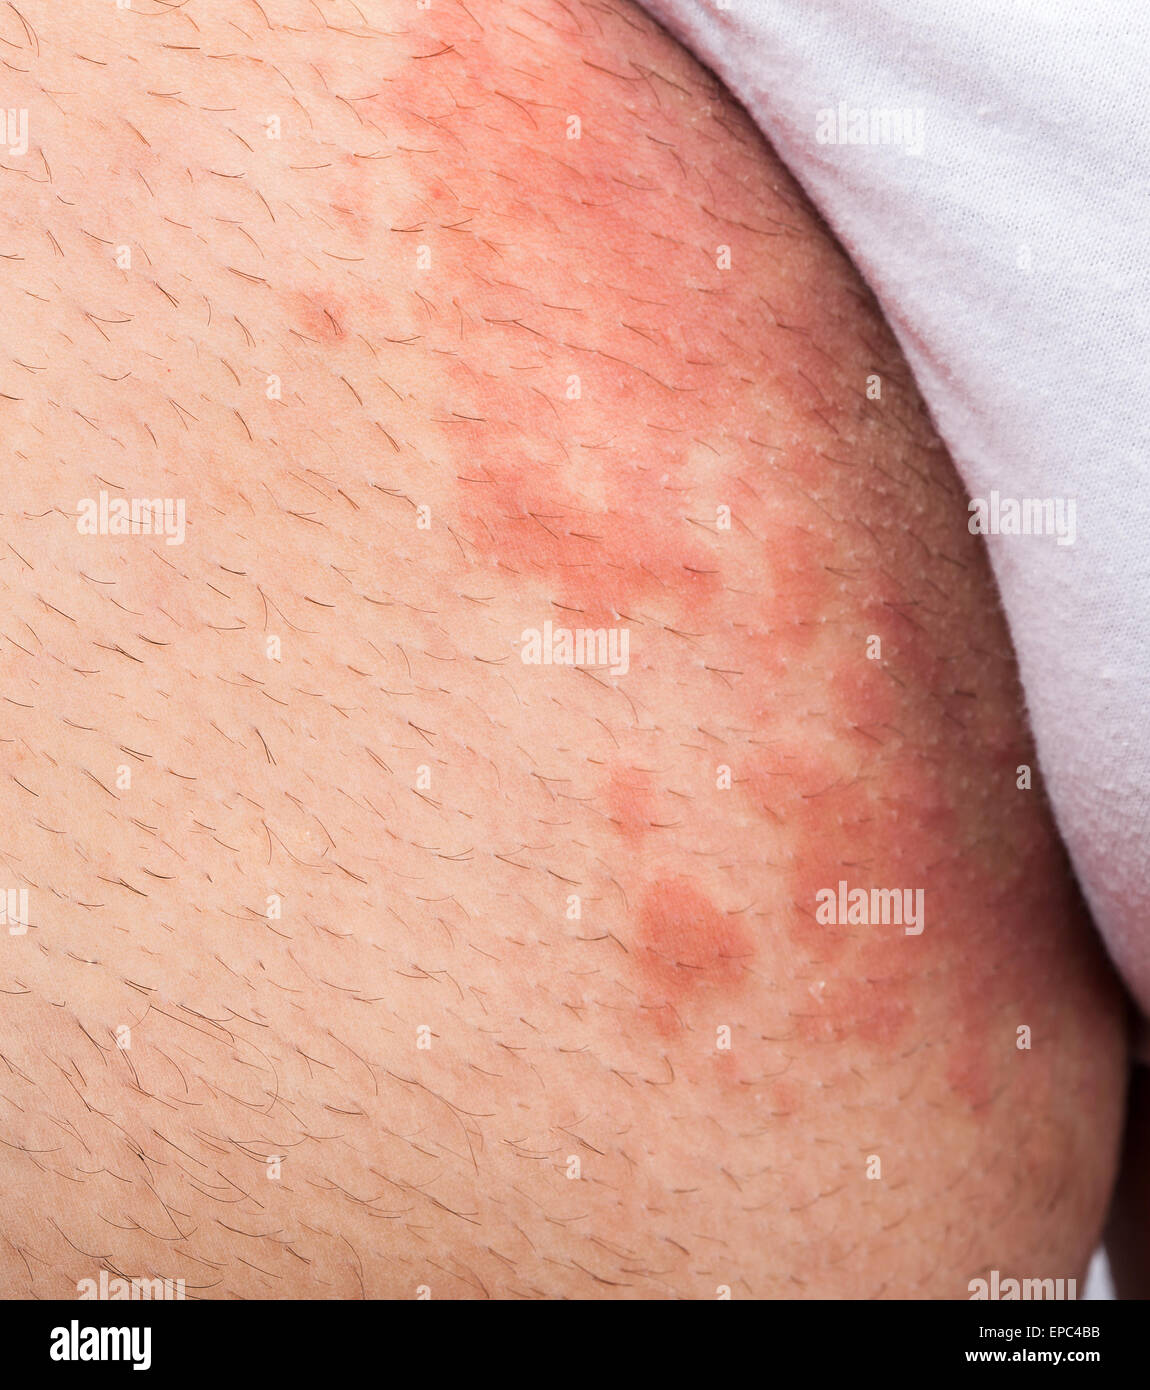 Eczema groin atopic dermatitis symptom of skin texture Stock Photo